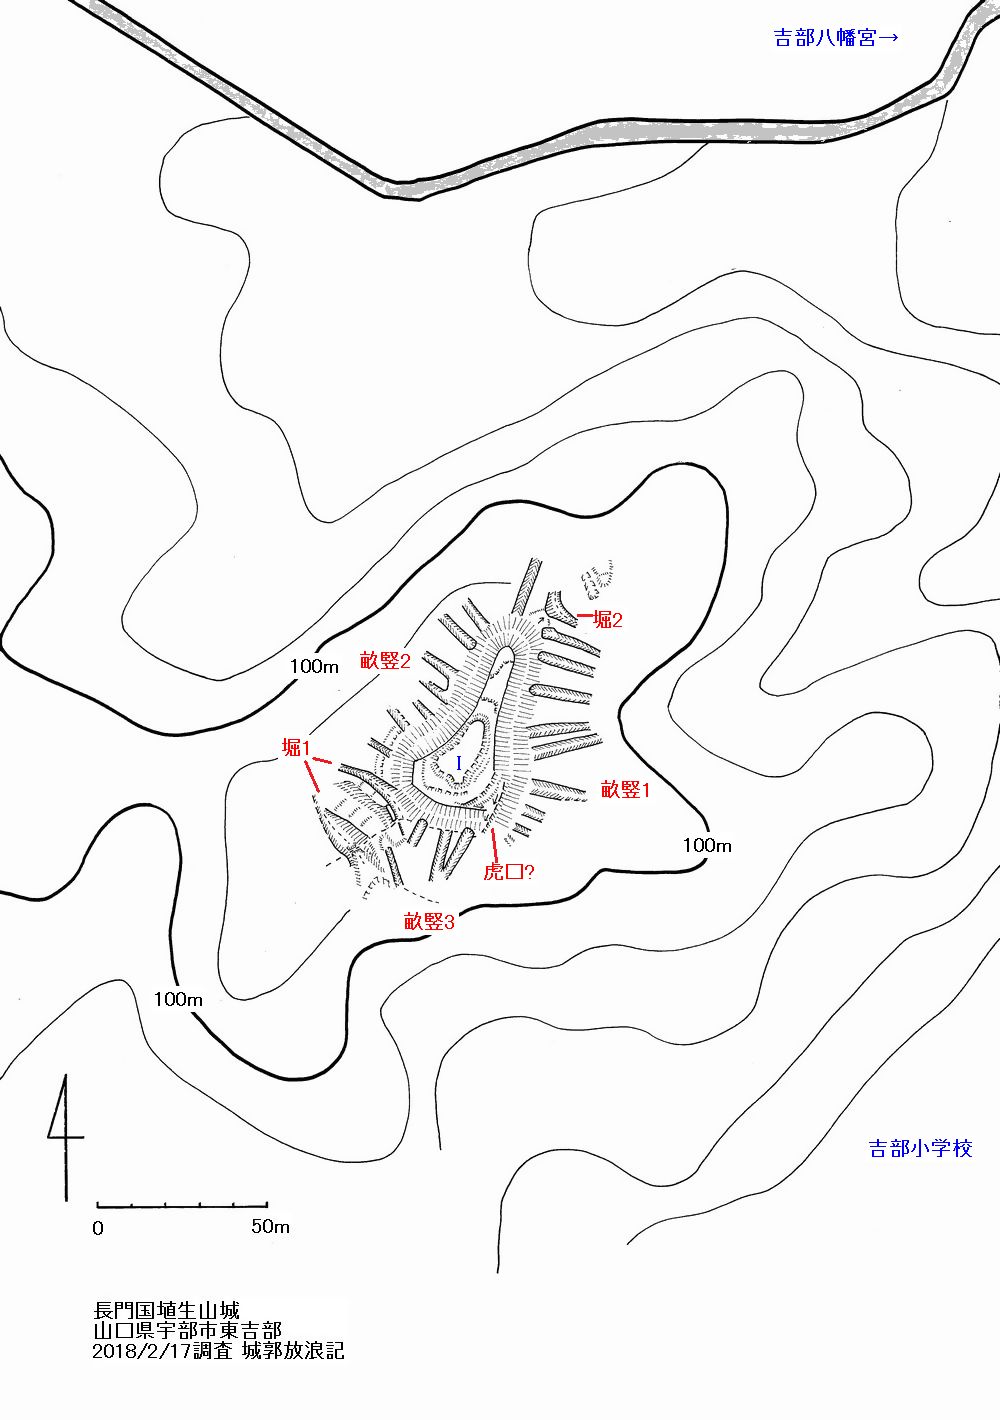 長門 埴生山城の縄張図